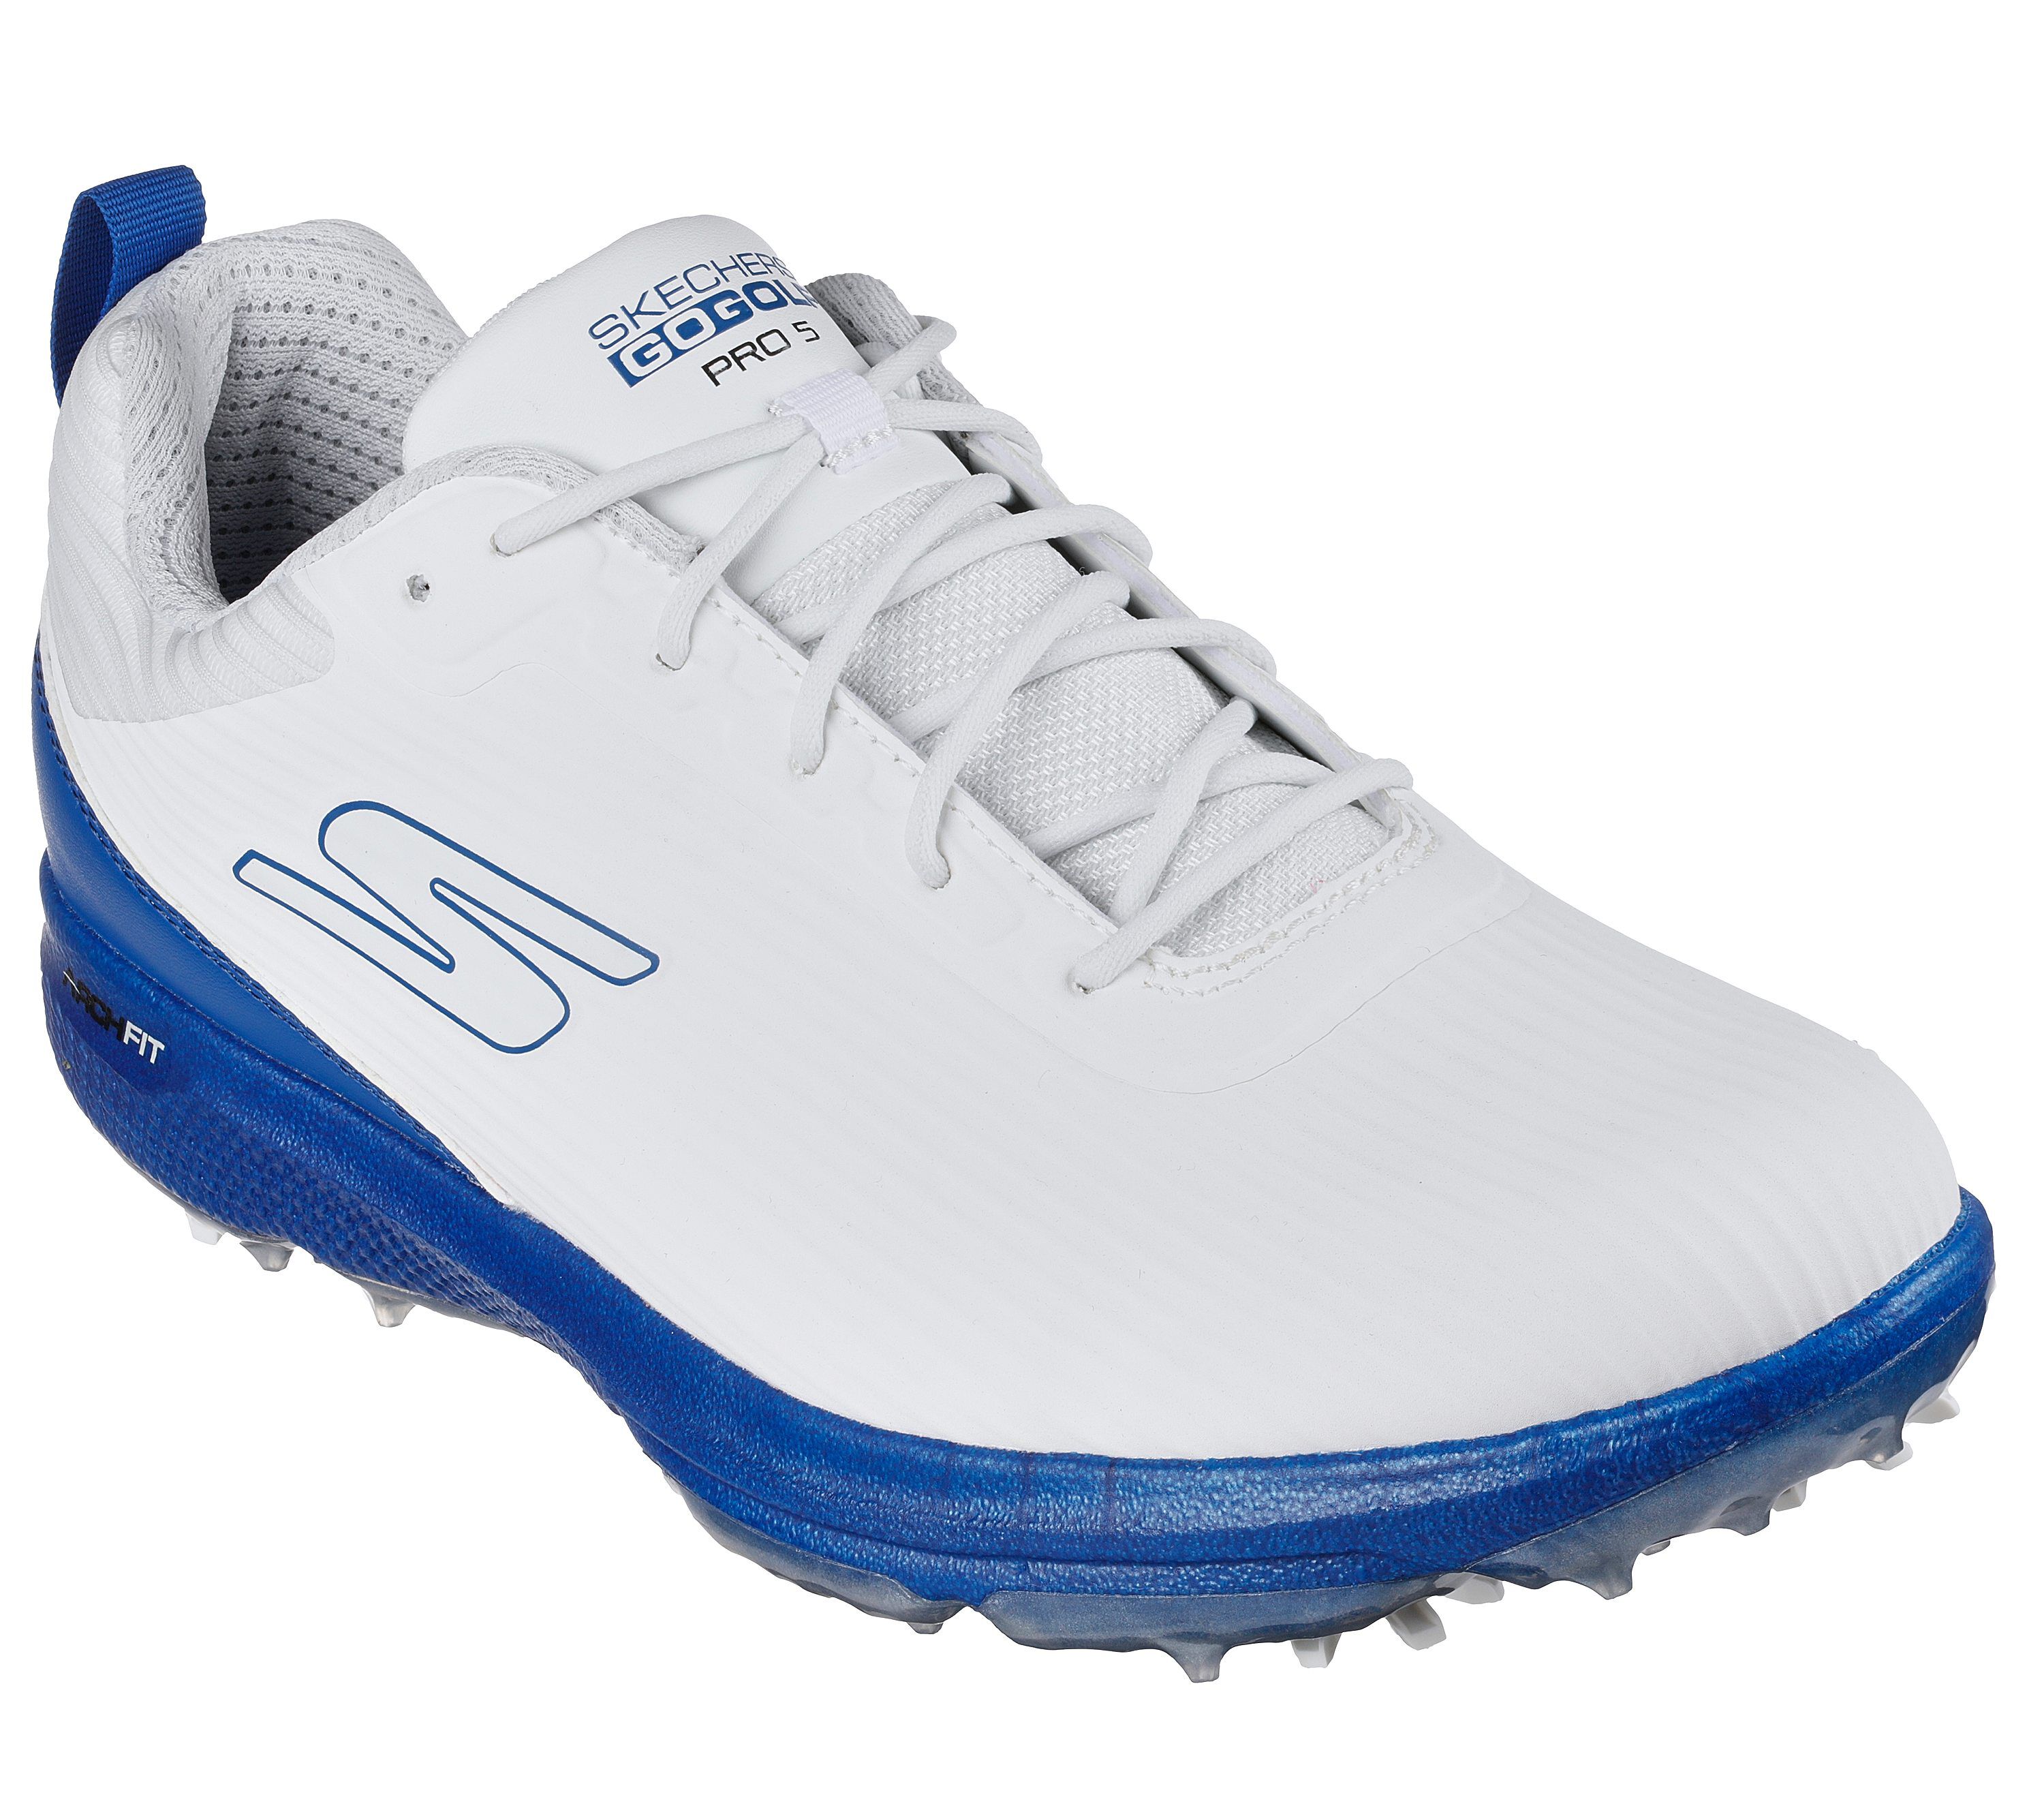 GoGolf | Golfing Shoes for Men & Women | SKECHERS